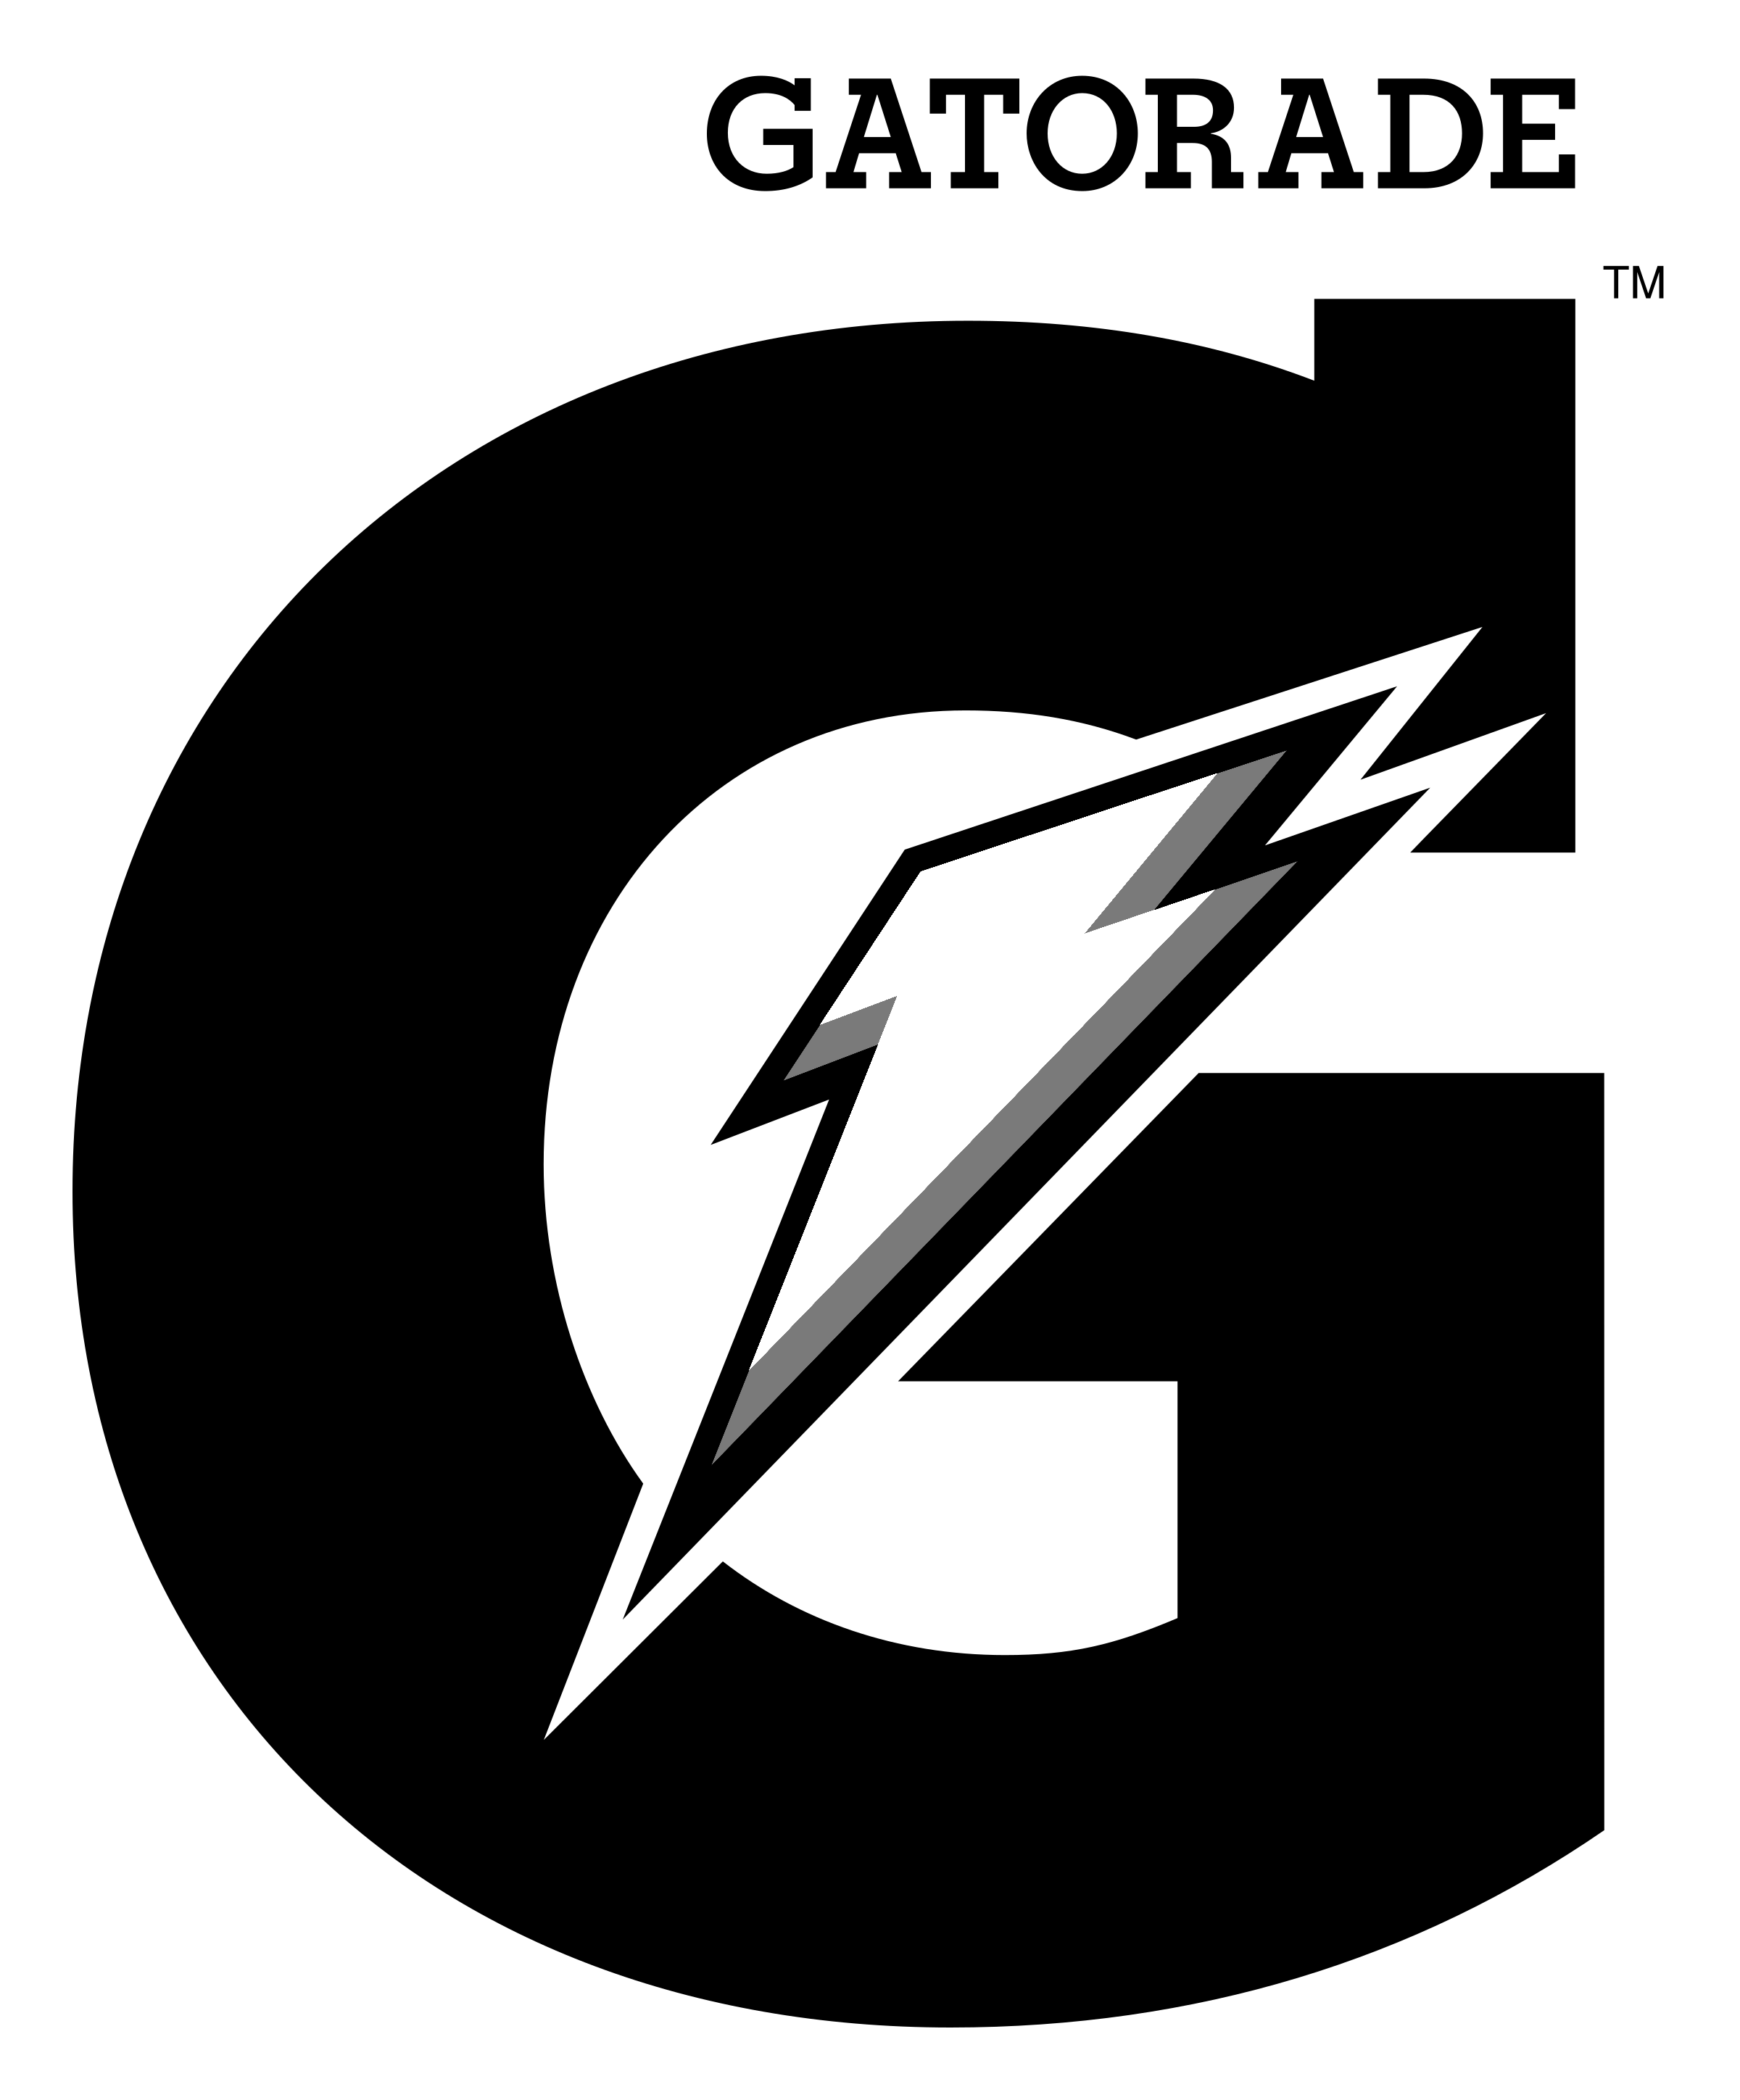 gatorade-logo-black-and-white.png